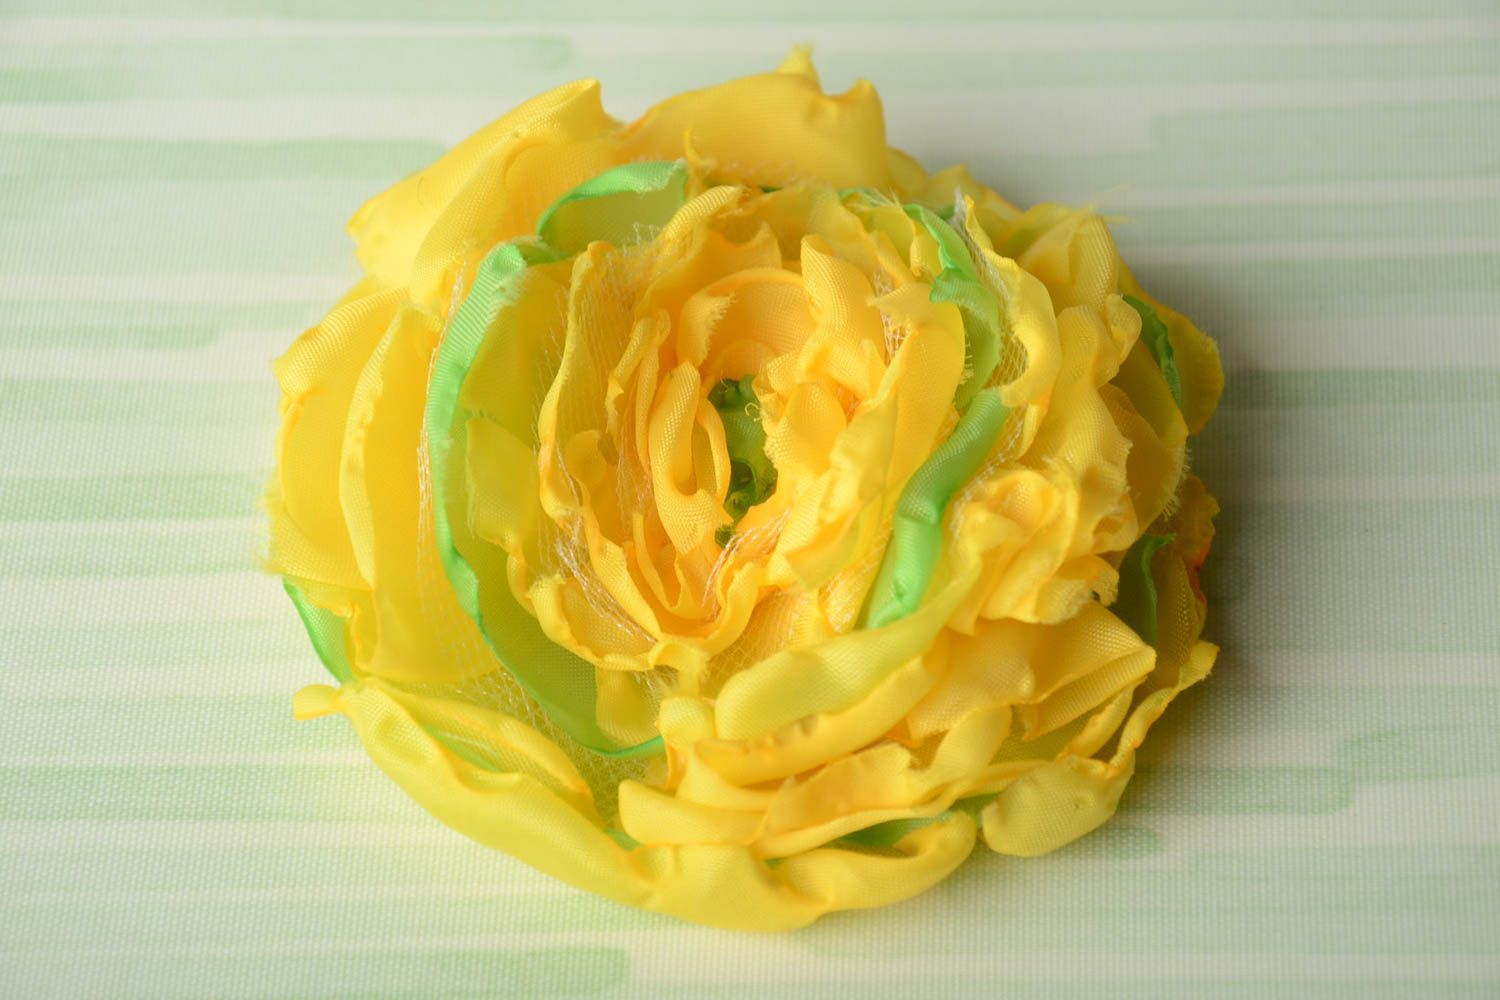 Брошь из ткани ручной работы авторская красивая желтая с салатовым в виде цветка фото 1